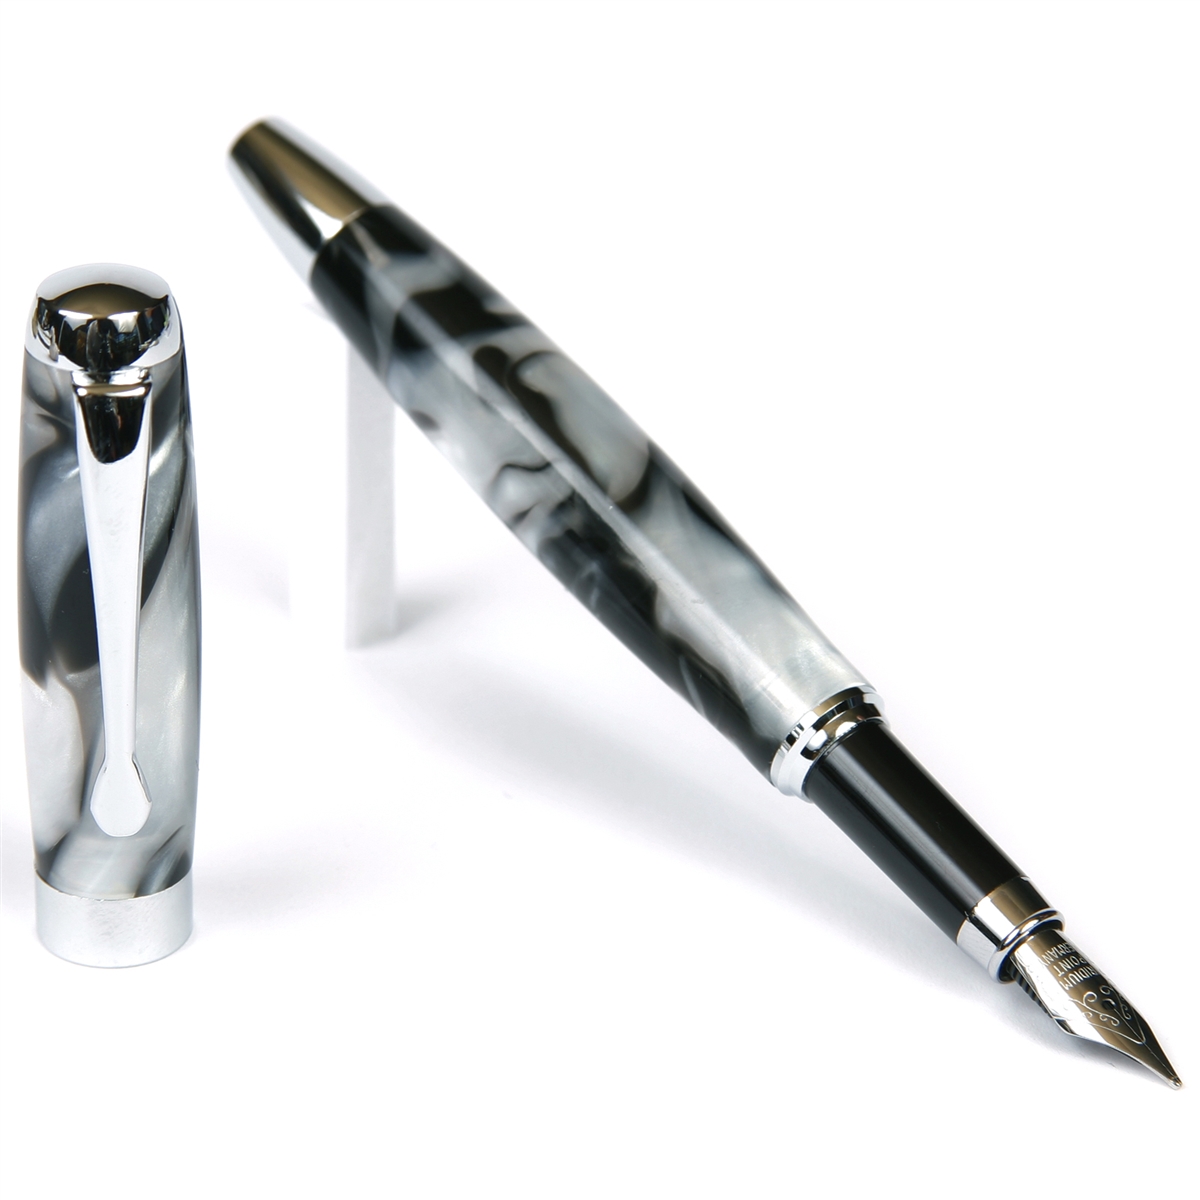 Black & Pearl Marbleized Gloss Body Fountain Pen by Lanier Pens